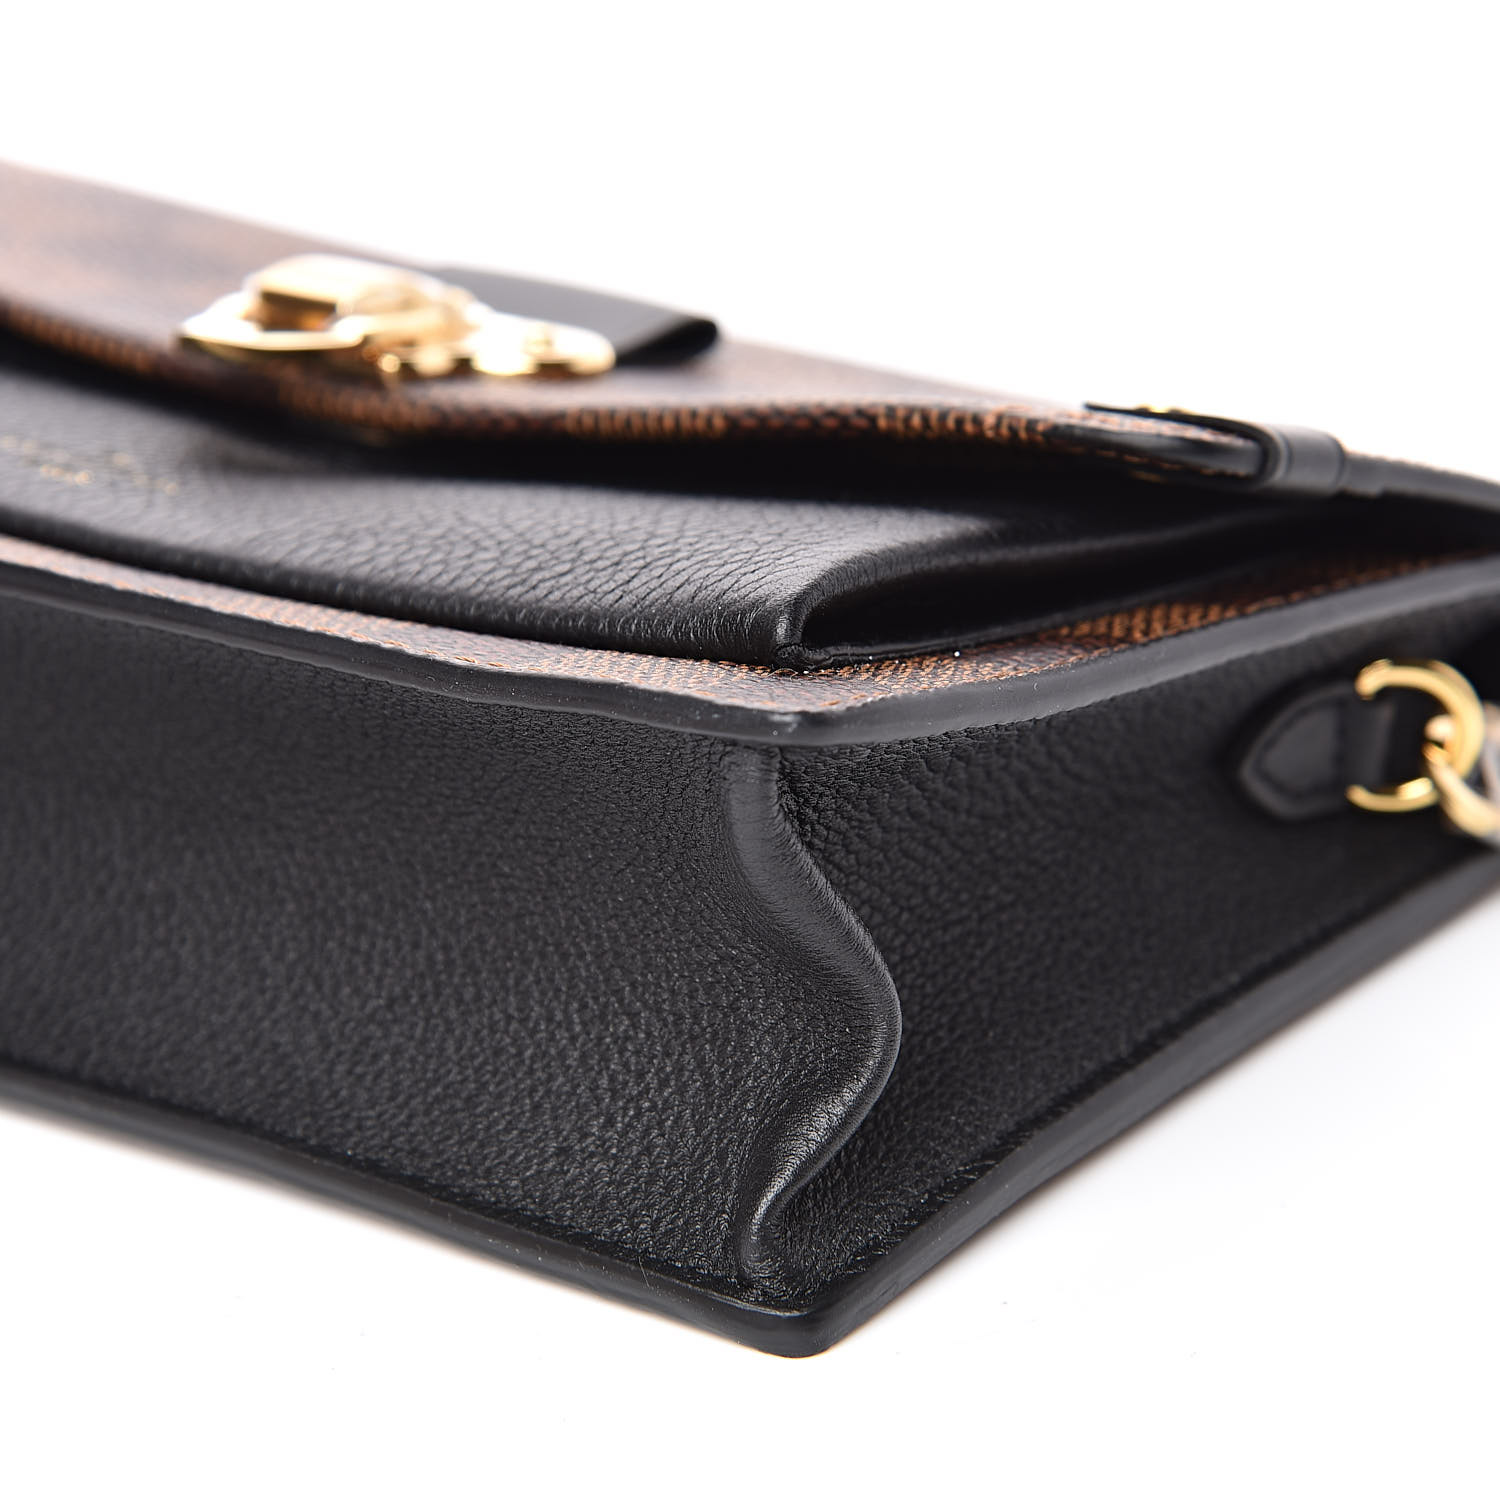 Shop Louis Vuitton Vavin chain wallet (N60237, N60221) by